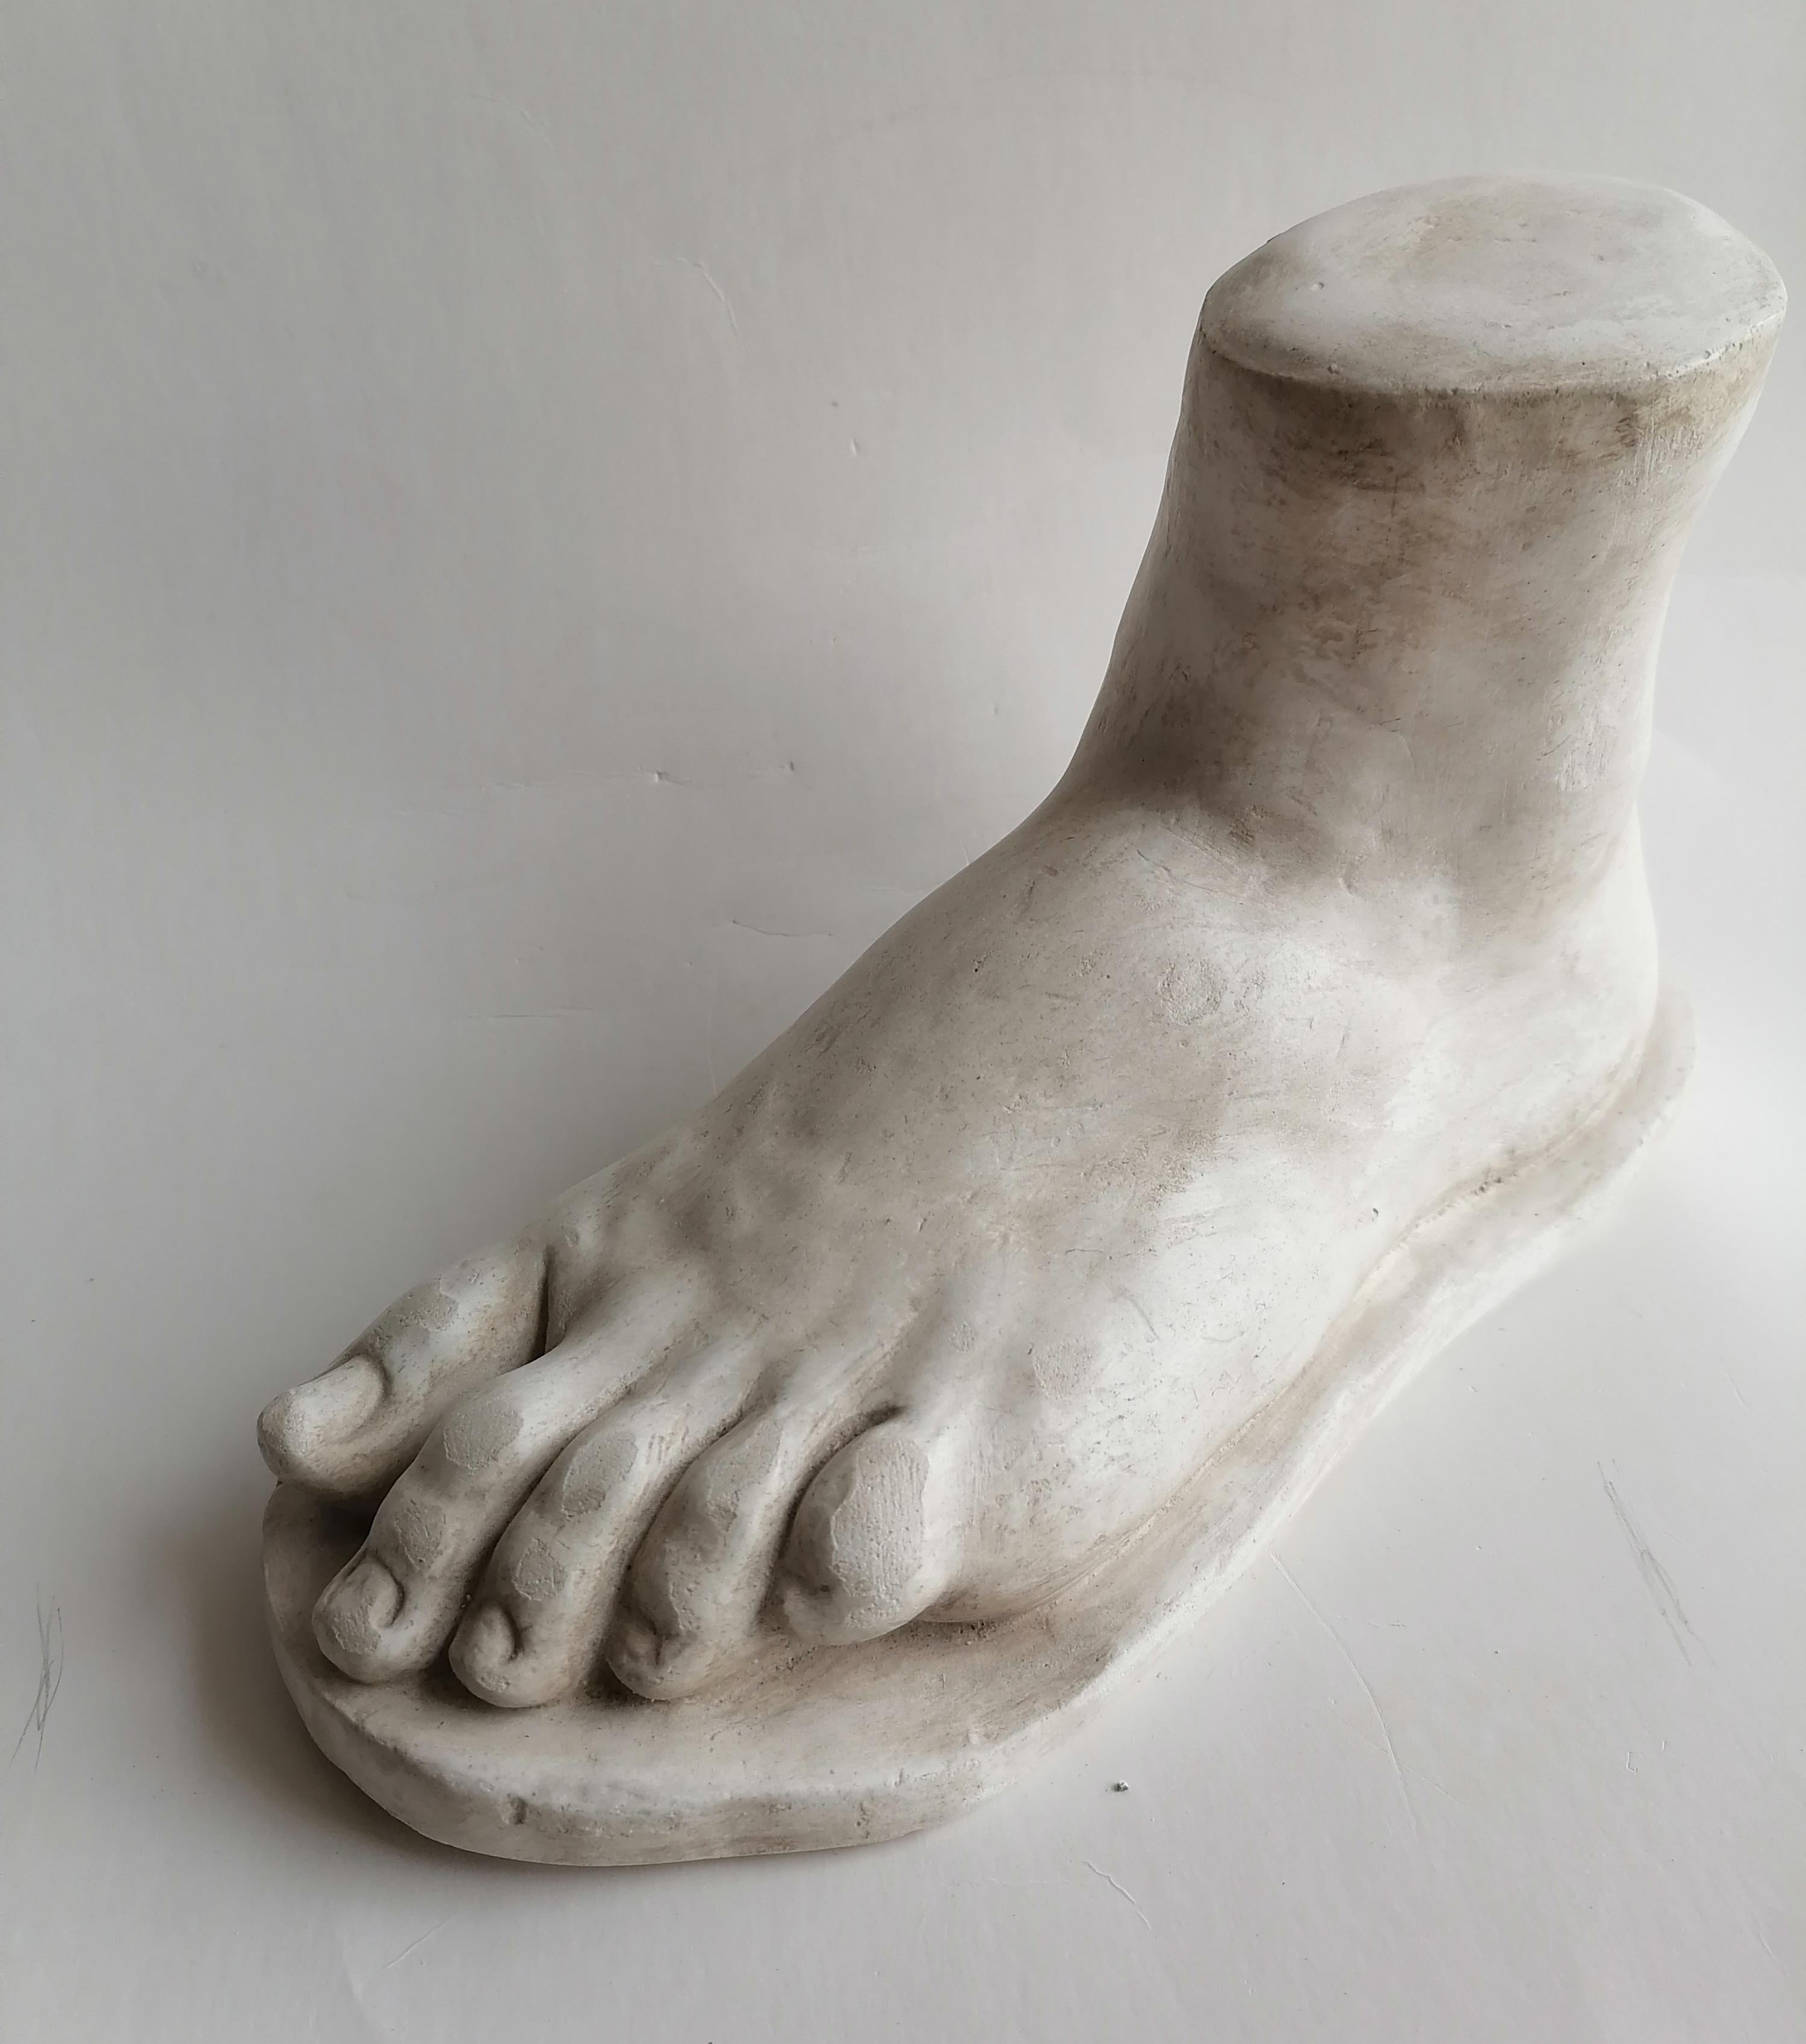 skulptur, Fuß, Fußmodell, griechischer Fuß, Studio-Fußmodell, klassisches Fußmodell.
Ateliermodell für einen Fuß in Lebensgröße.
skulptur aus Marmorine Impasto, einem Bindemittel, das auch Brüsseler Marmor genannt wird
Diese Modelle sind häufig in